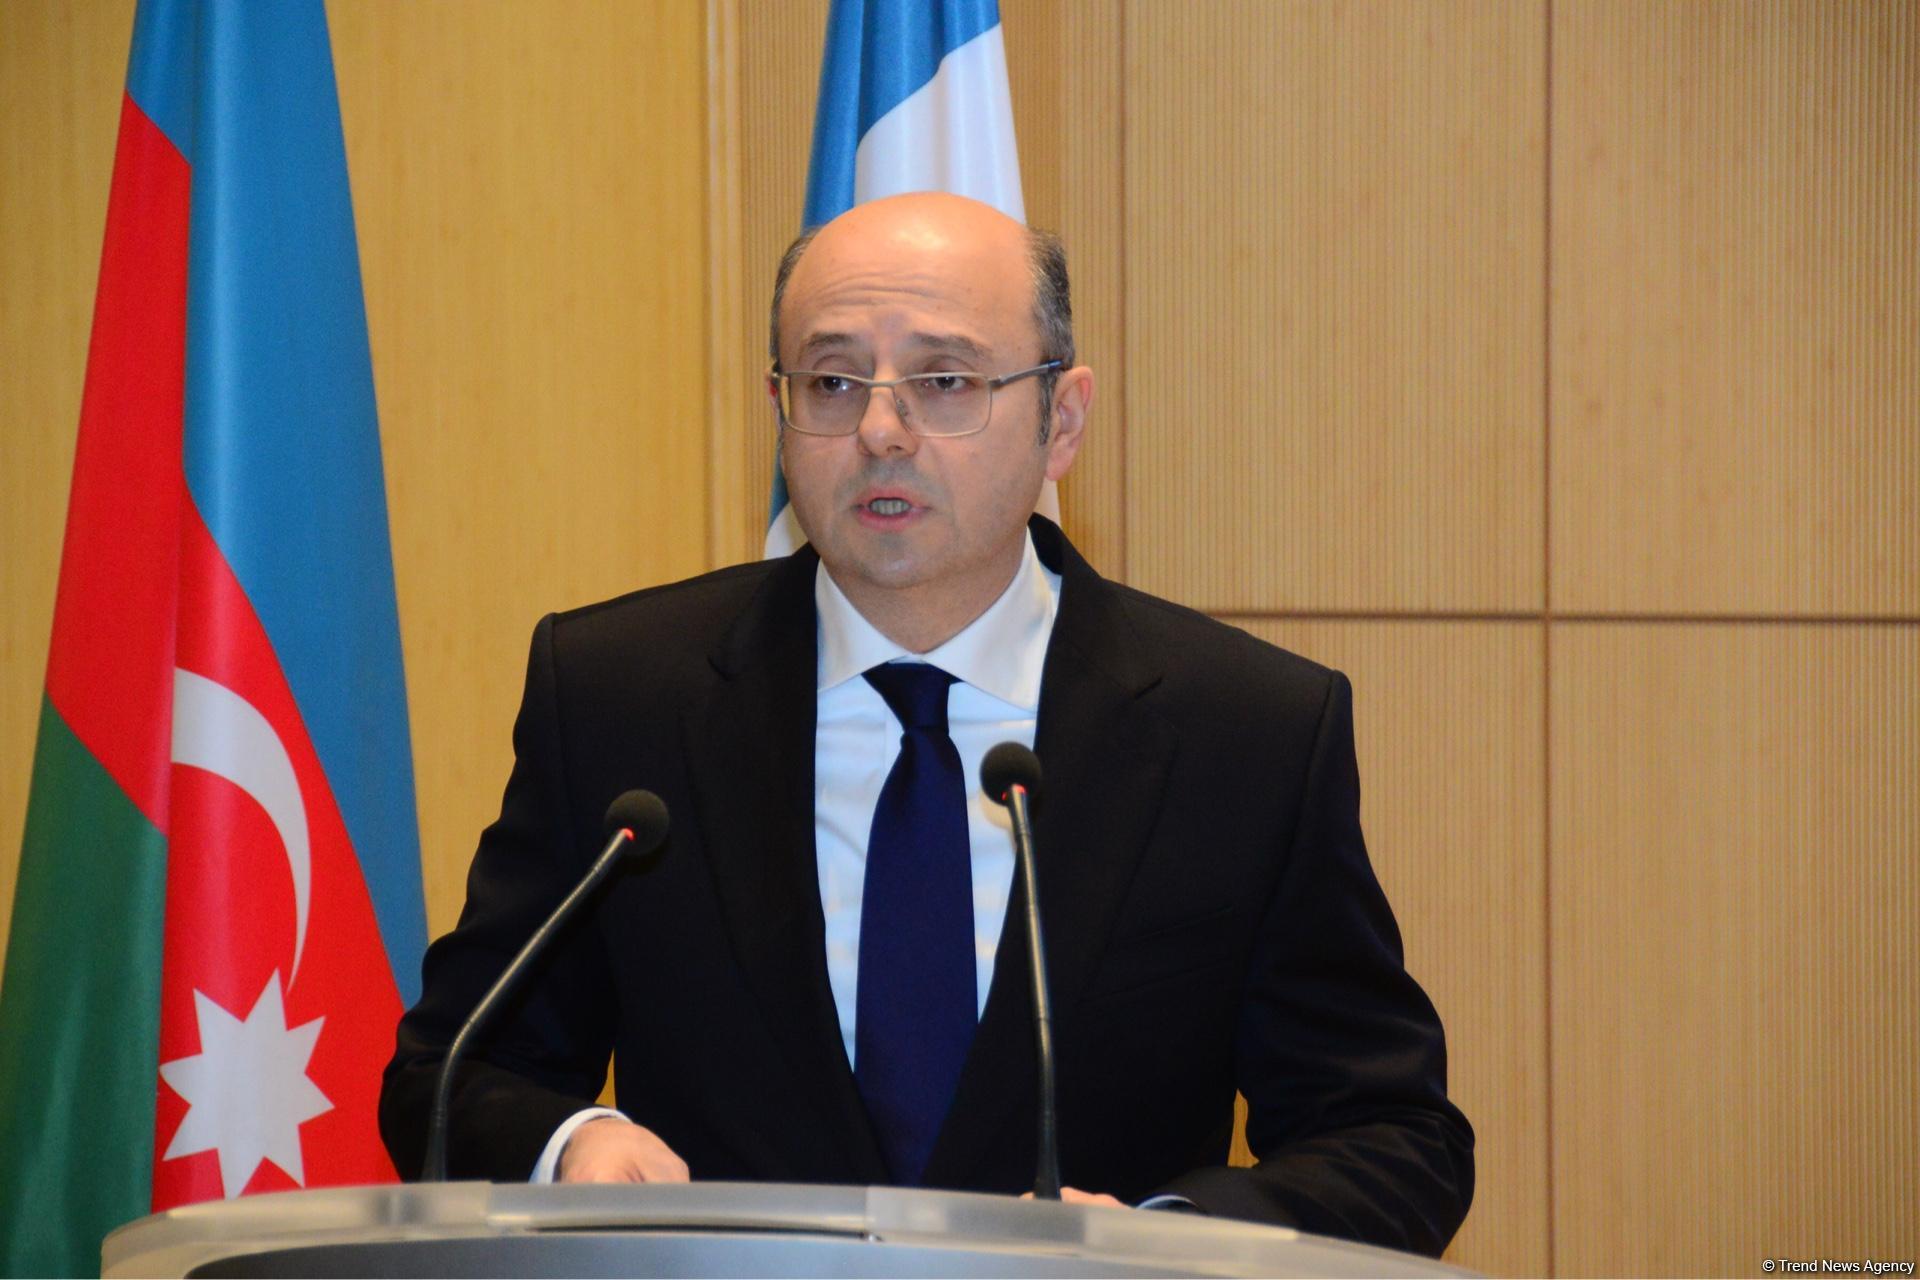 В Азербайджане создаются новые генерирующие мощности в сфере альтернативной энергетики - министр (ФОТО)